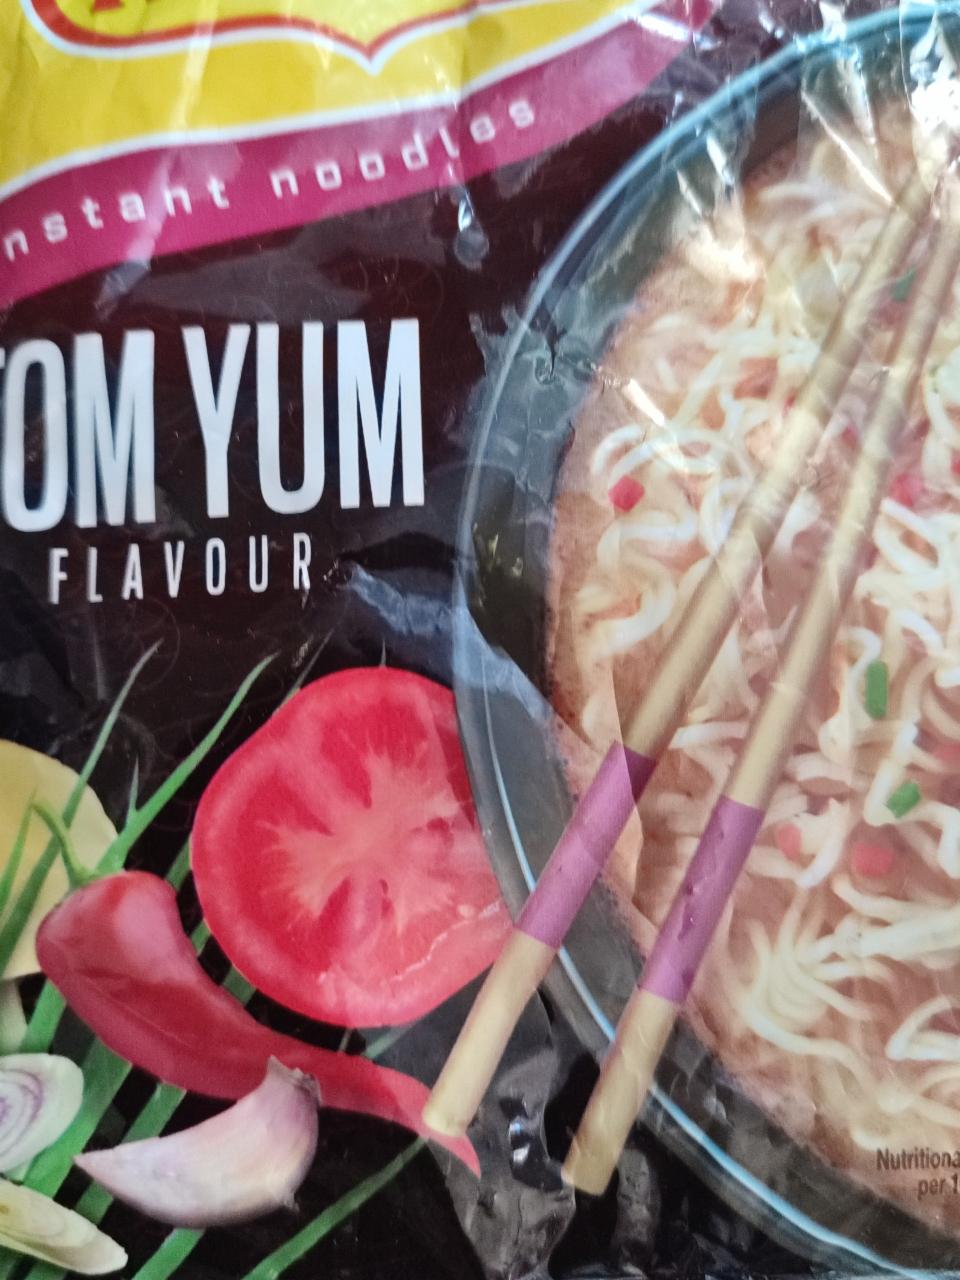 Fotografie - Instant noodles Tom Yum flavour Rollton